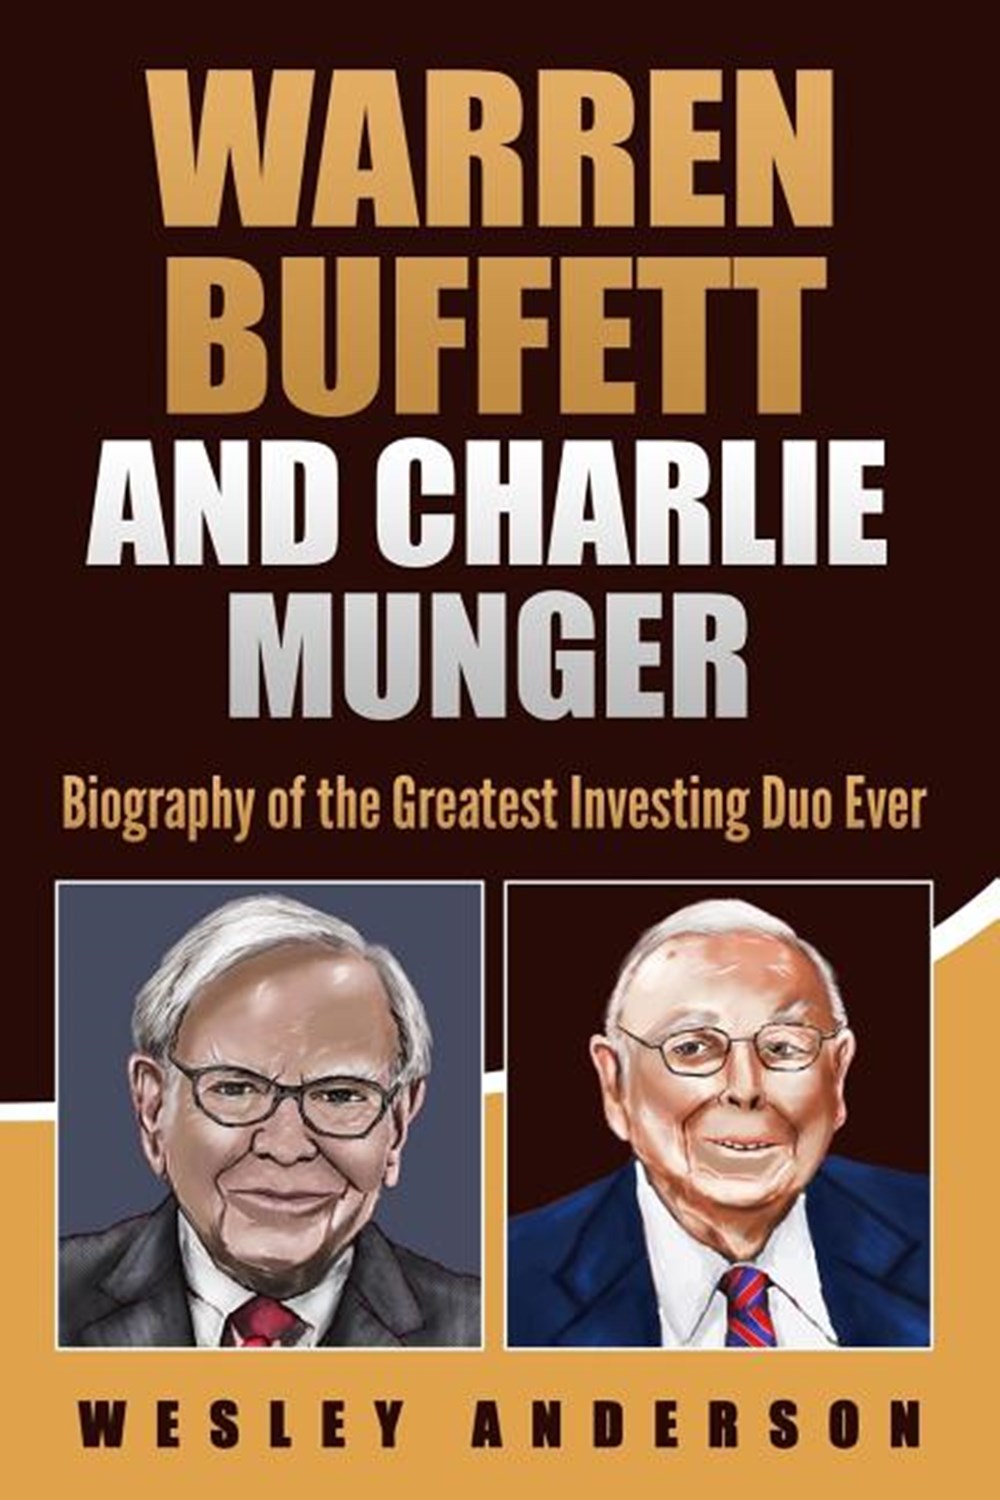 biography of warren buffett book